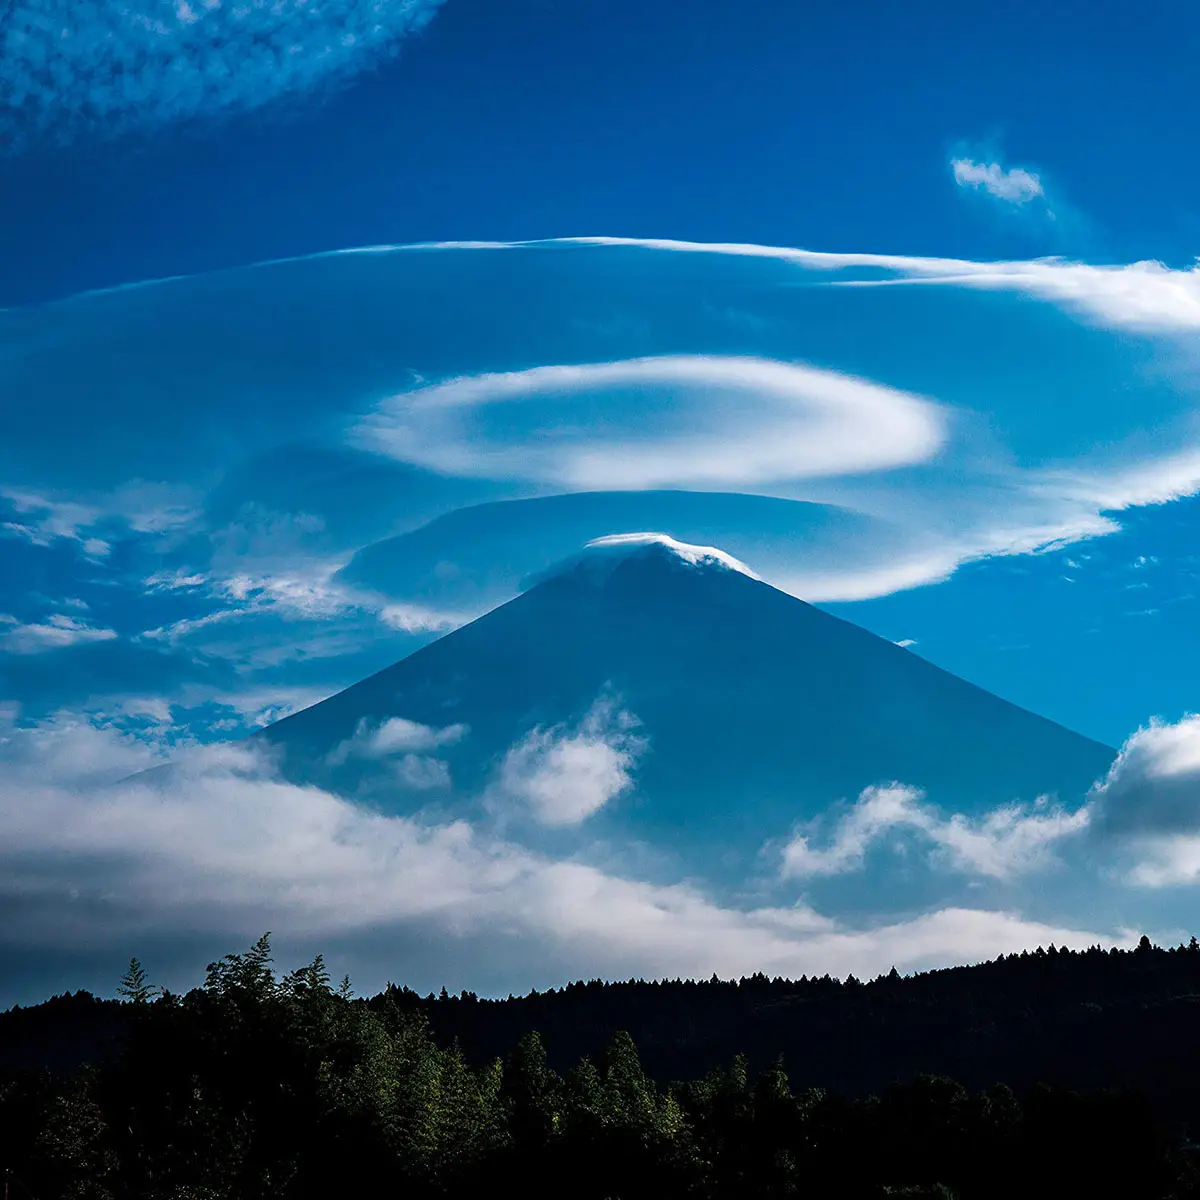 「ウツロヒ」富士山のある風景、写真集、風景本